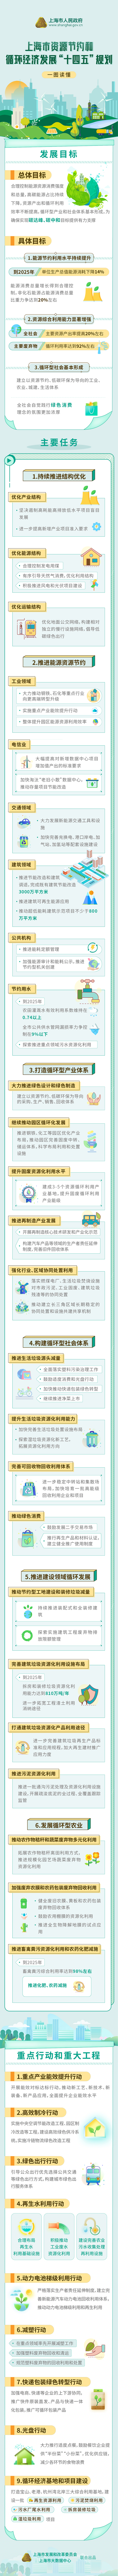 一图读懂《上海市资源节约和循环经济发展“十四五”规划》.jpg